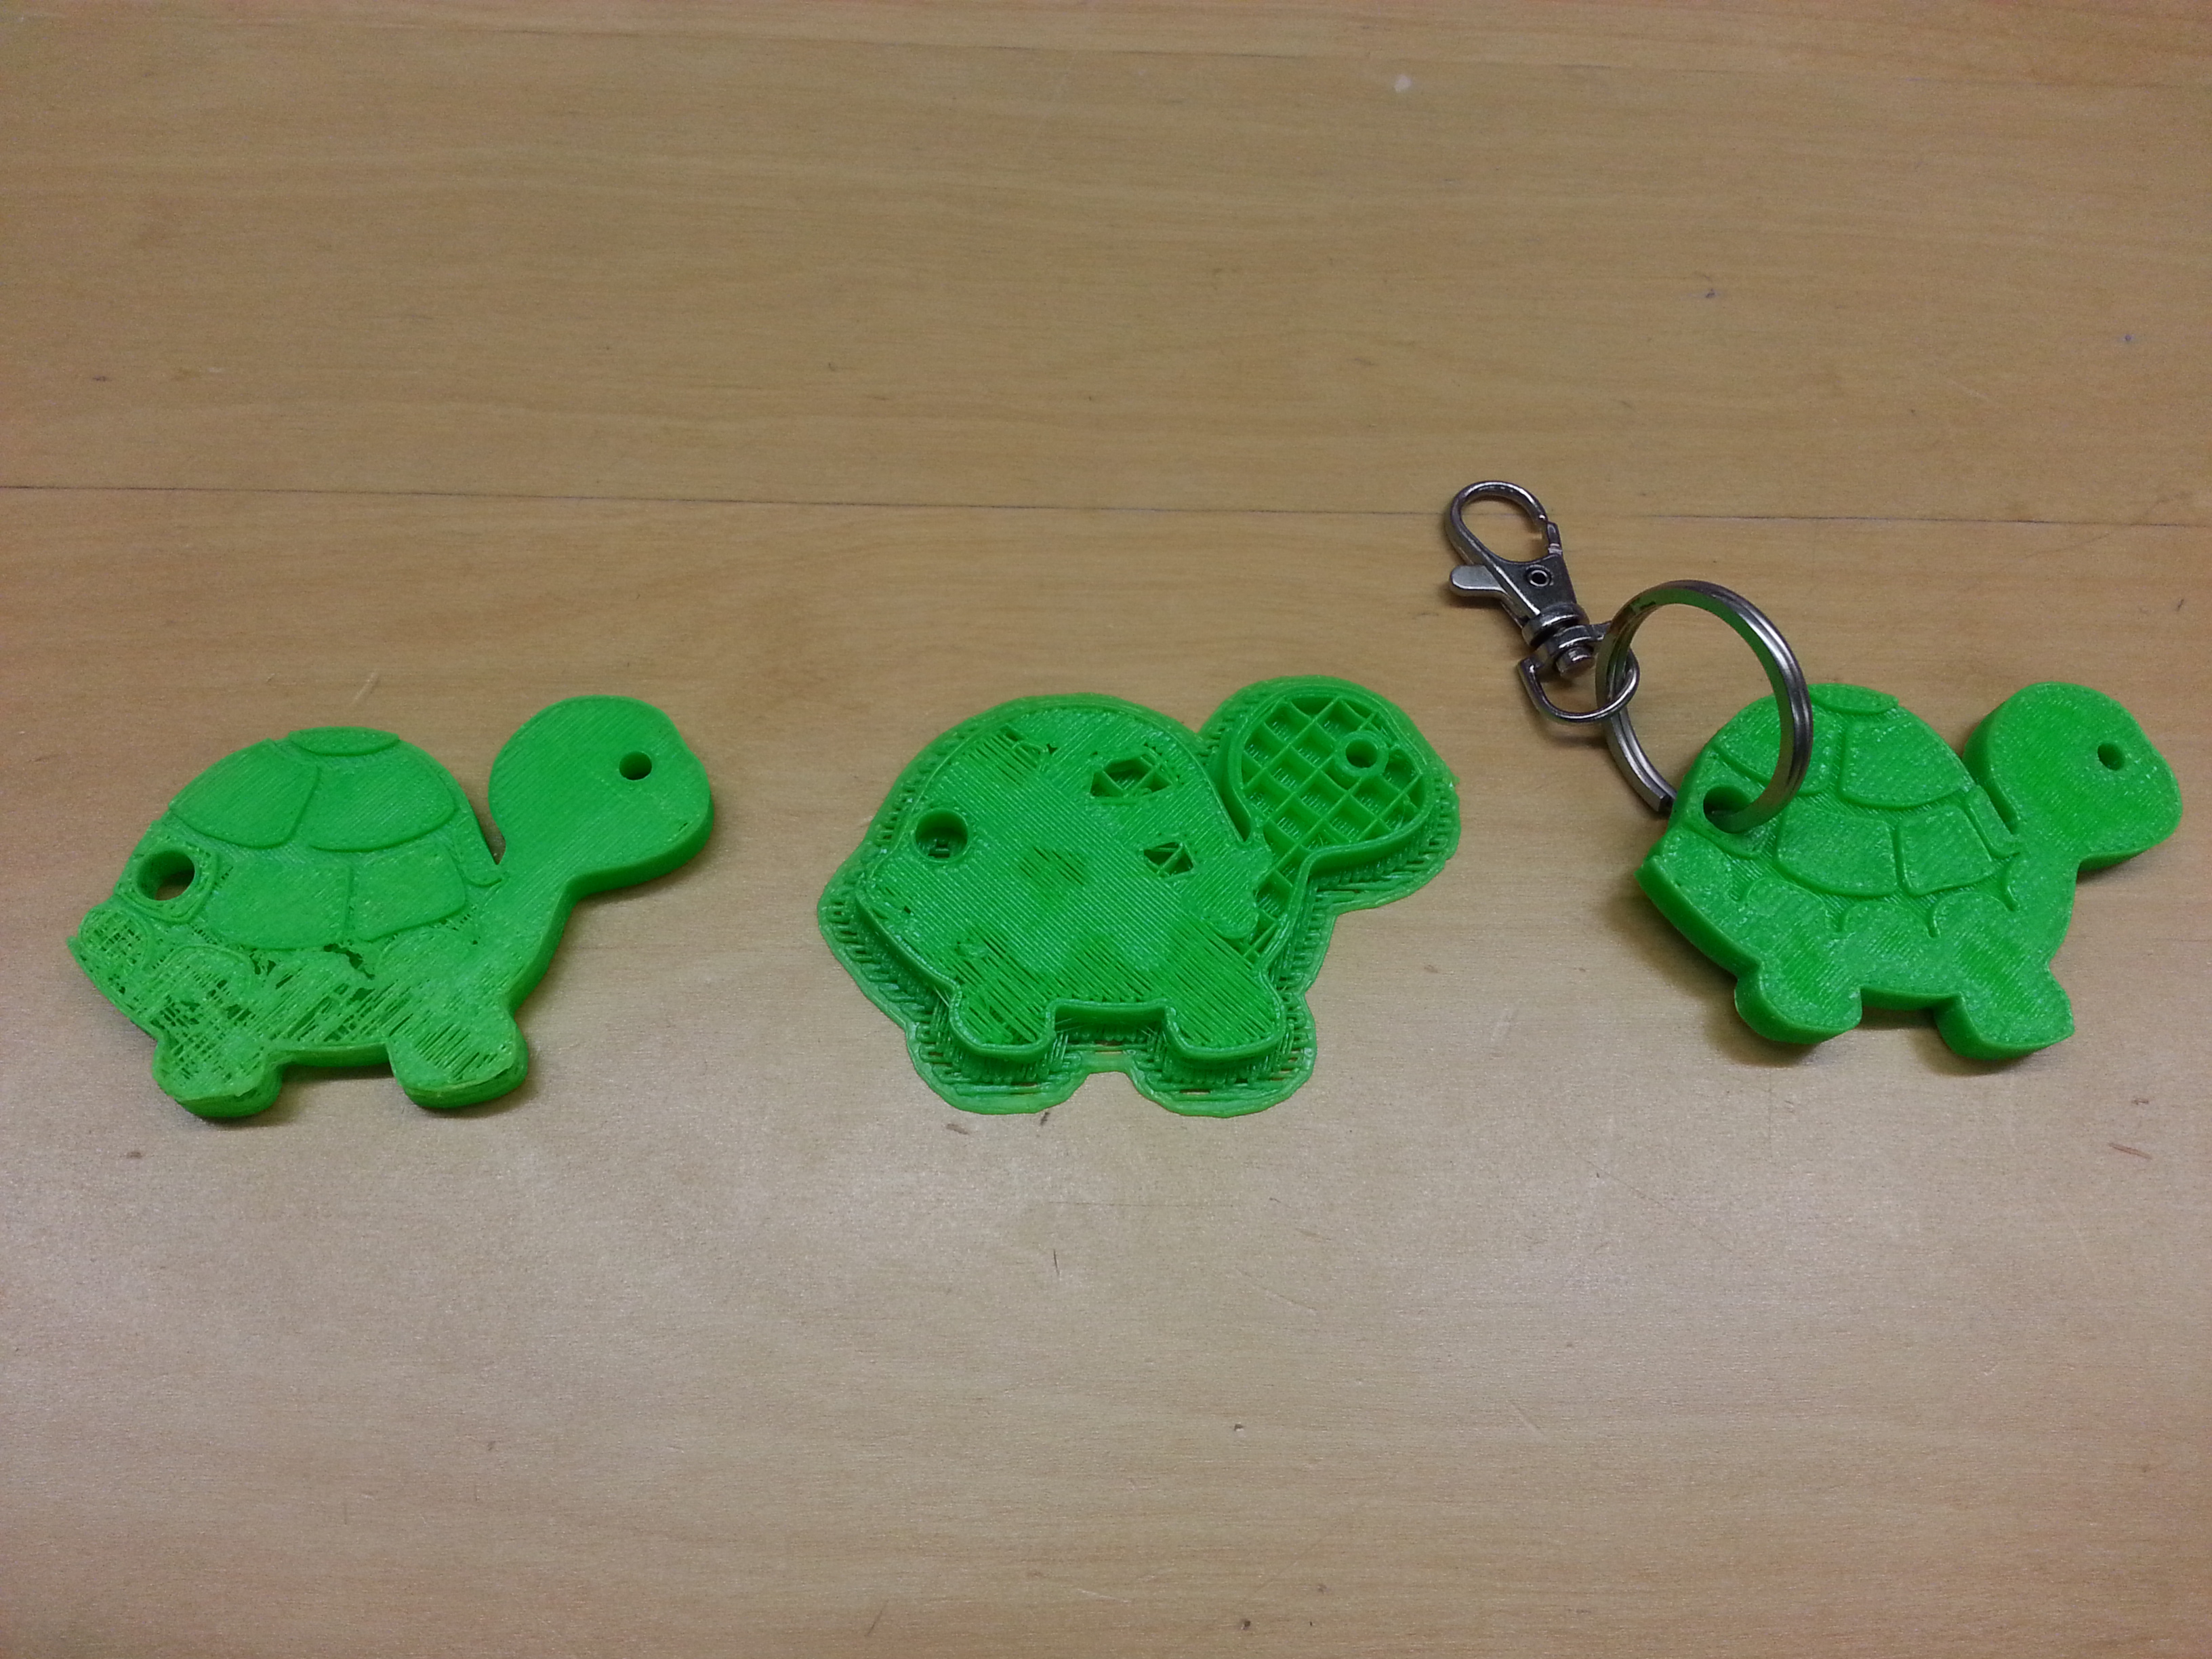 3D printed turtles